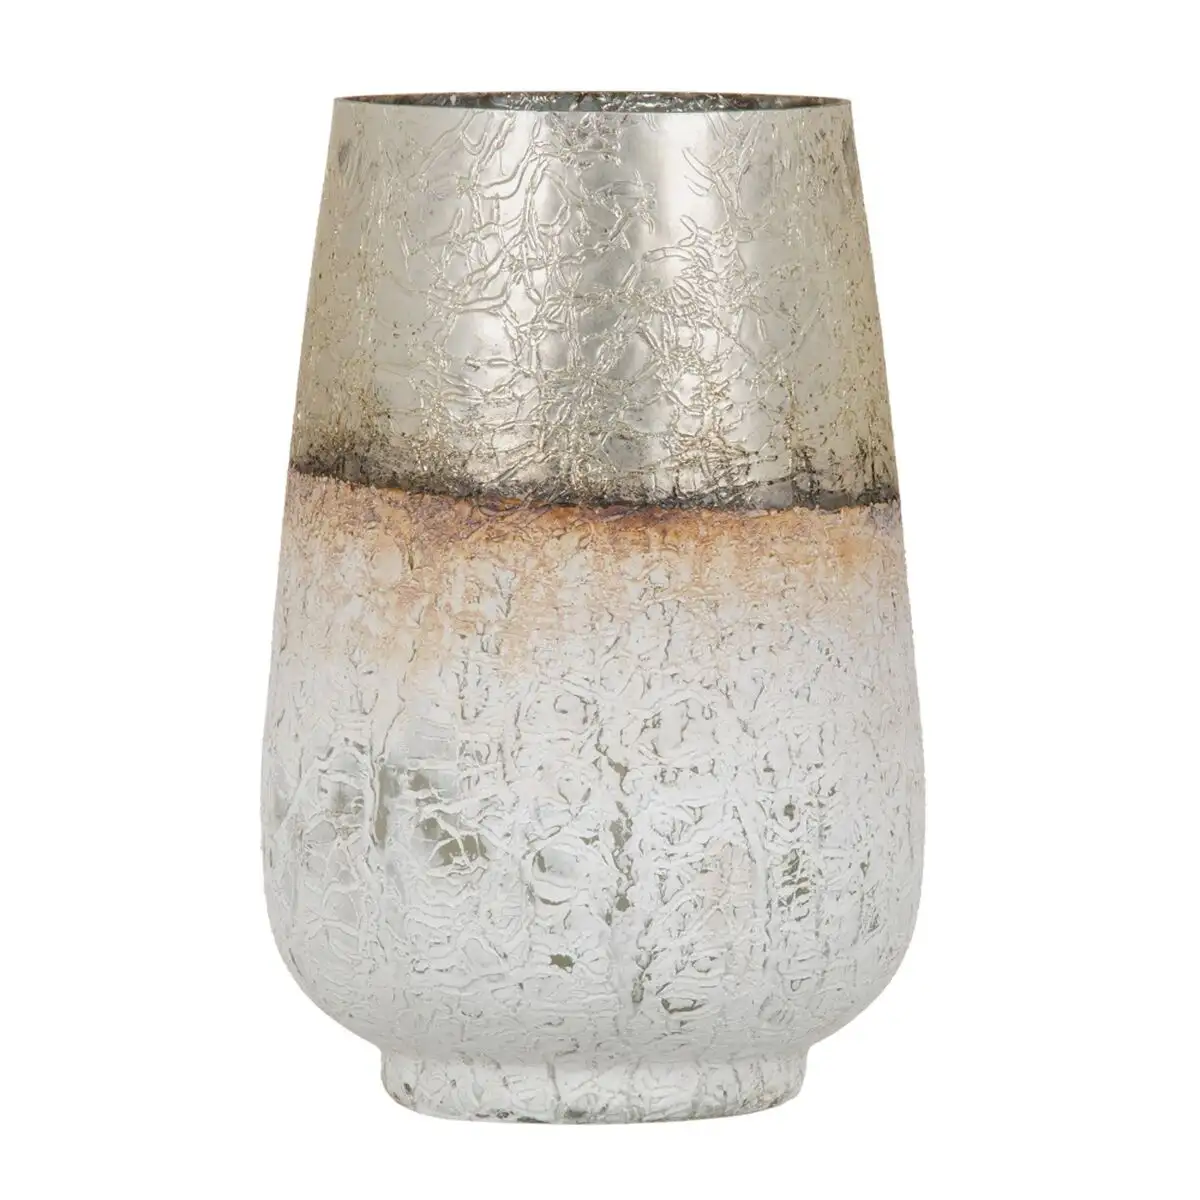 Vase cristal dore blanc 17 x 17 x 25 cm_8149. DIAYTAR SENEGAL - Votre Destination Shopping pour Tous. Parcourez notre boutique en ligne et découvrez une variété de produits pour satisfaire tous vos besoins et désirs.